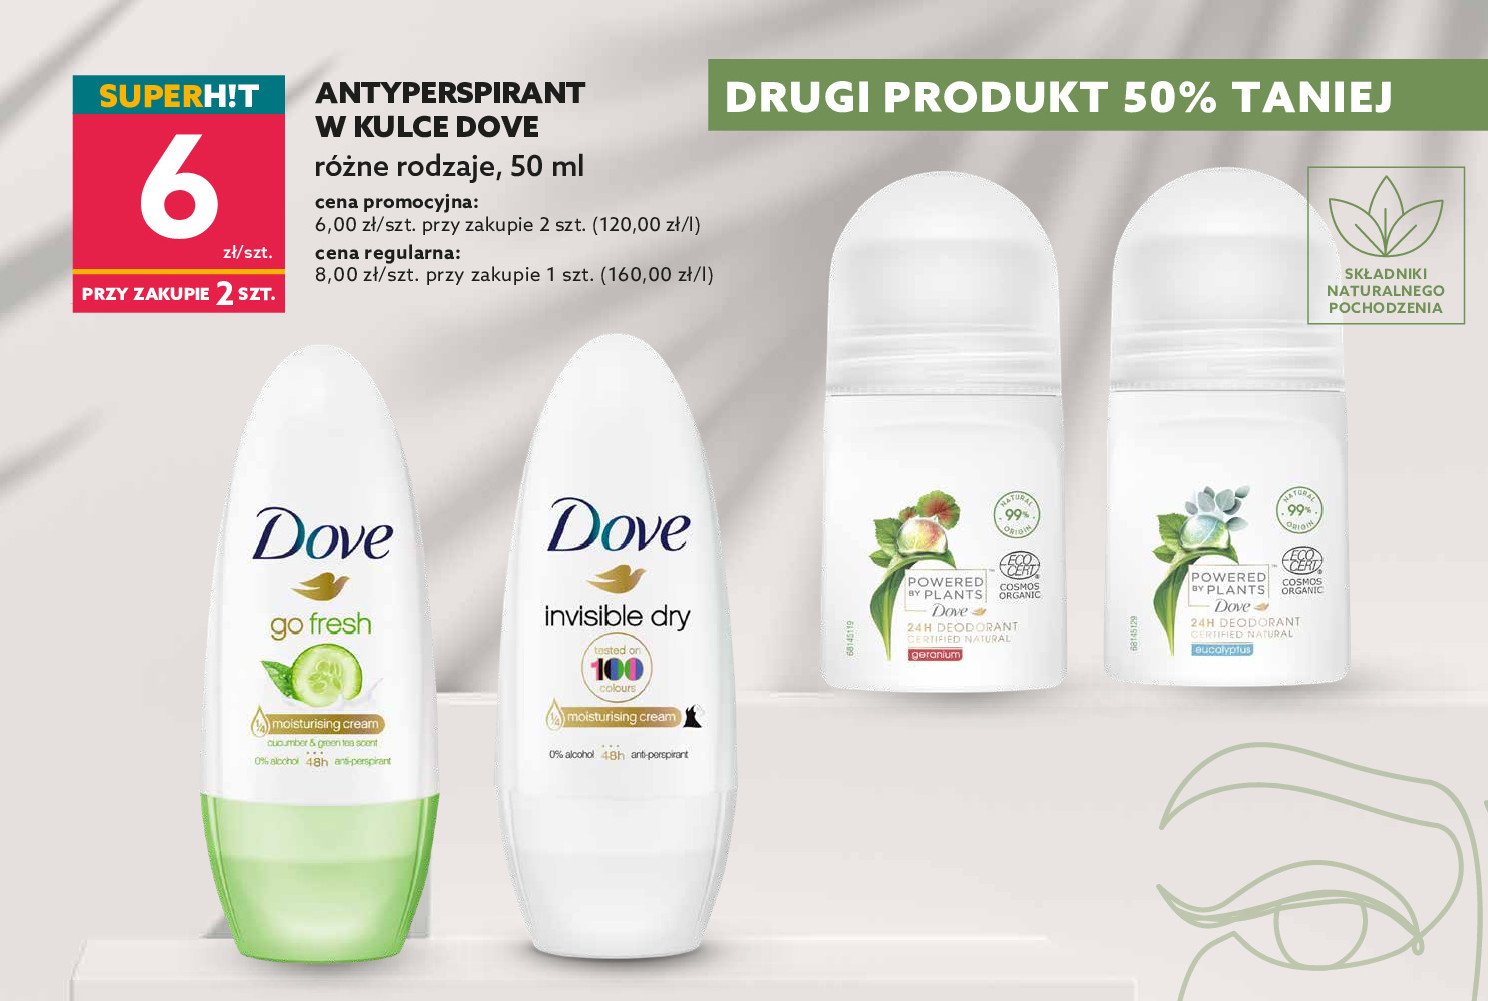 Dezodorant ginger Dove powered by plants promocja